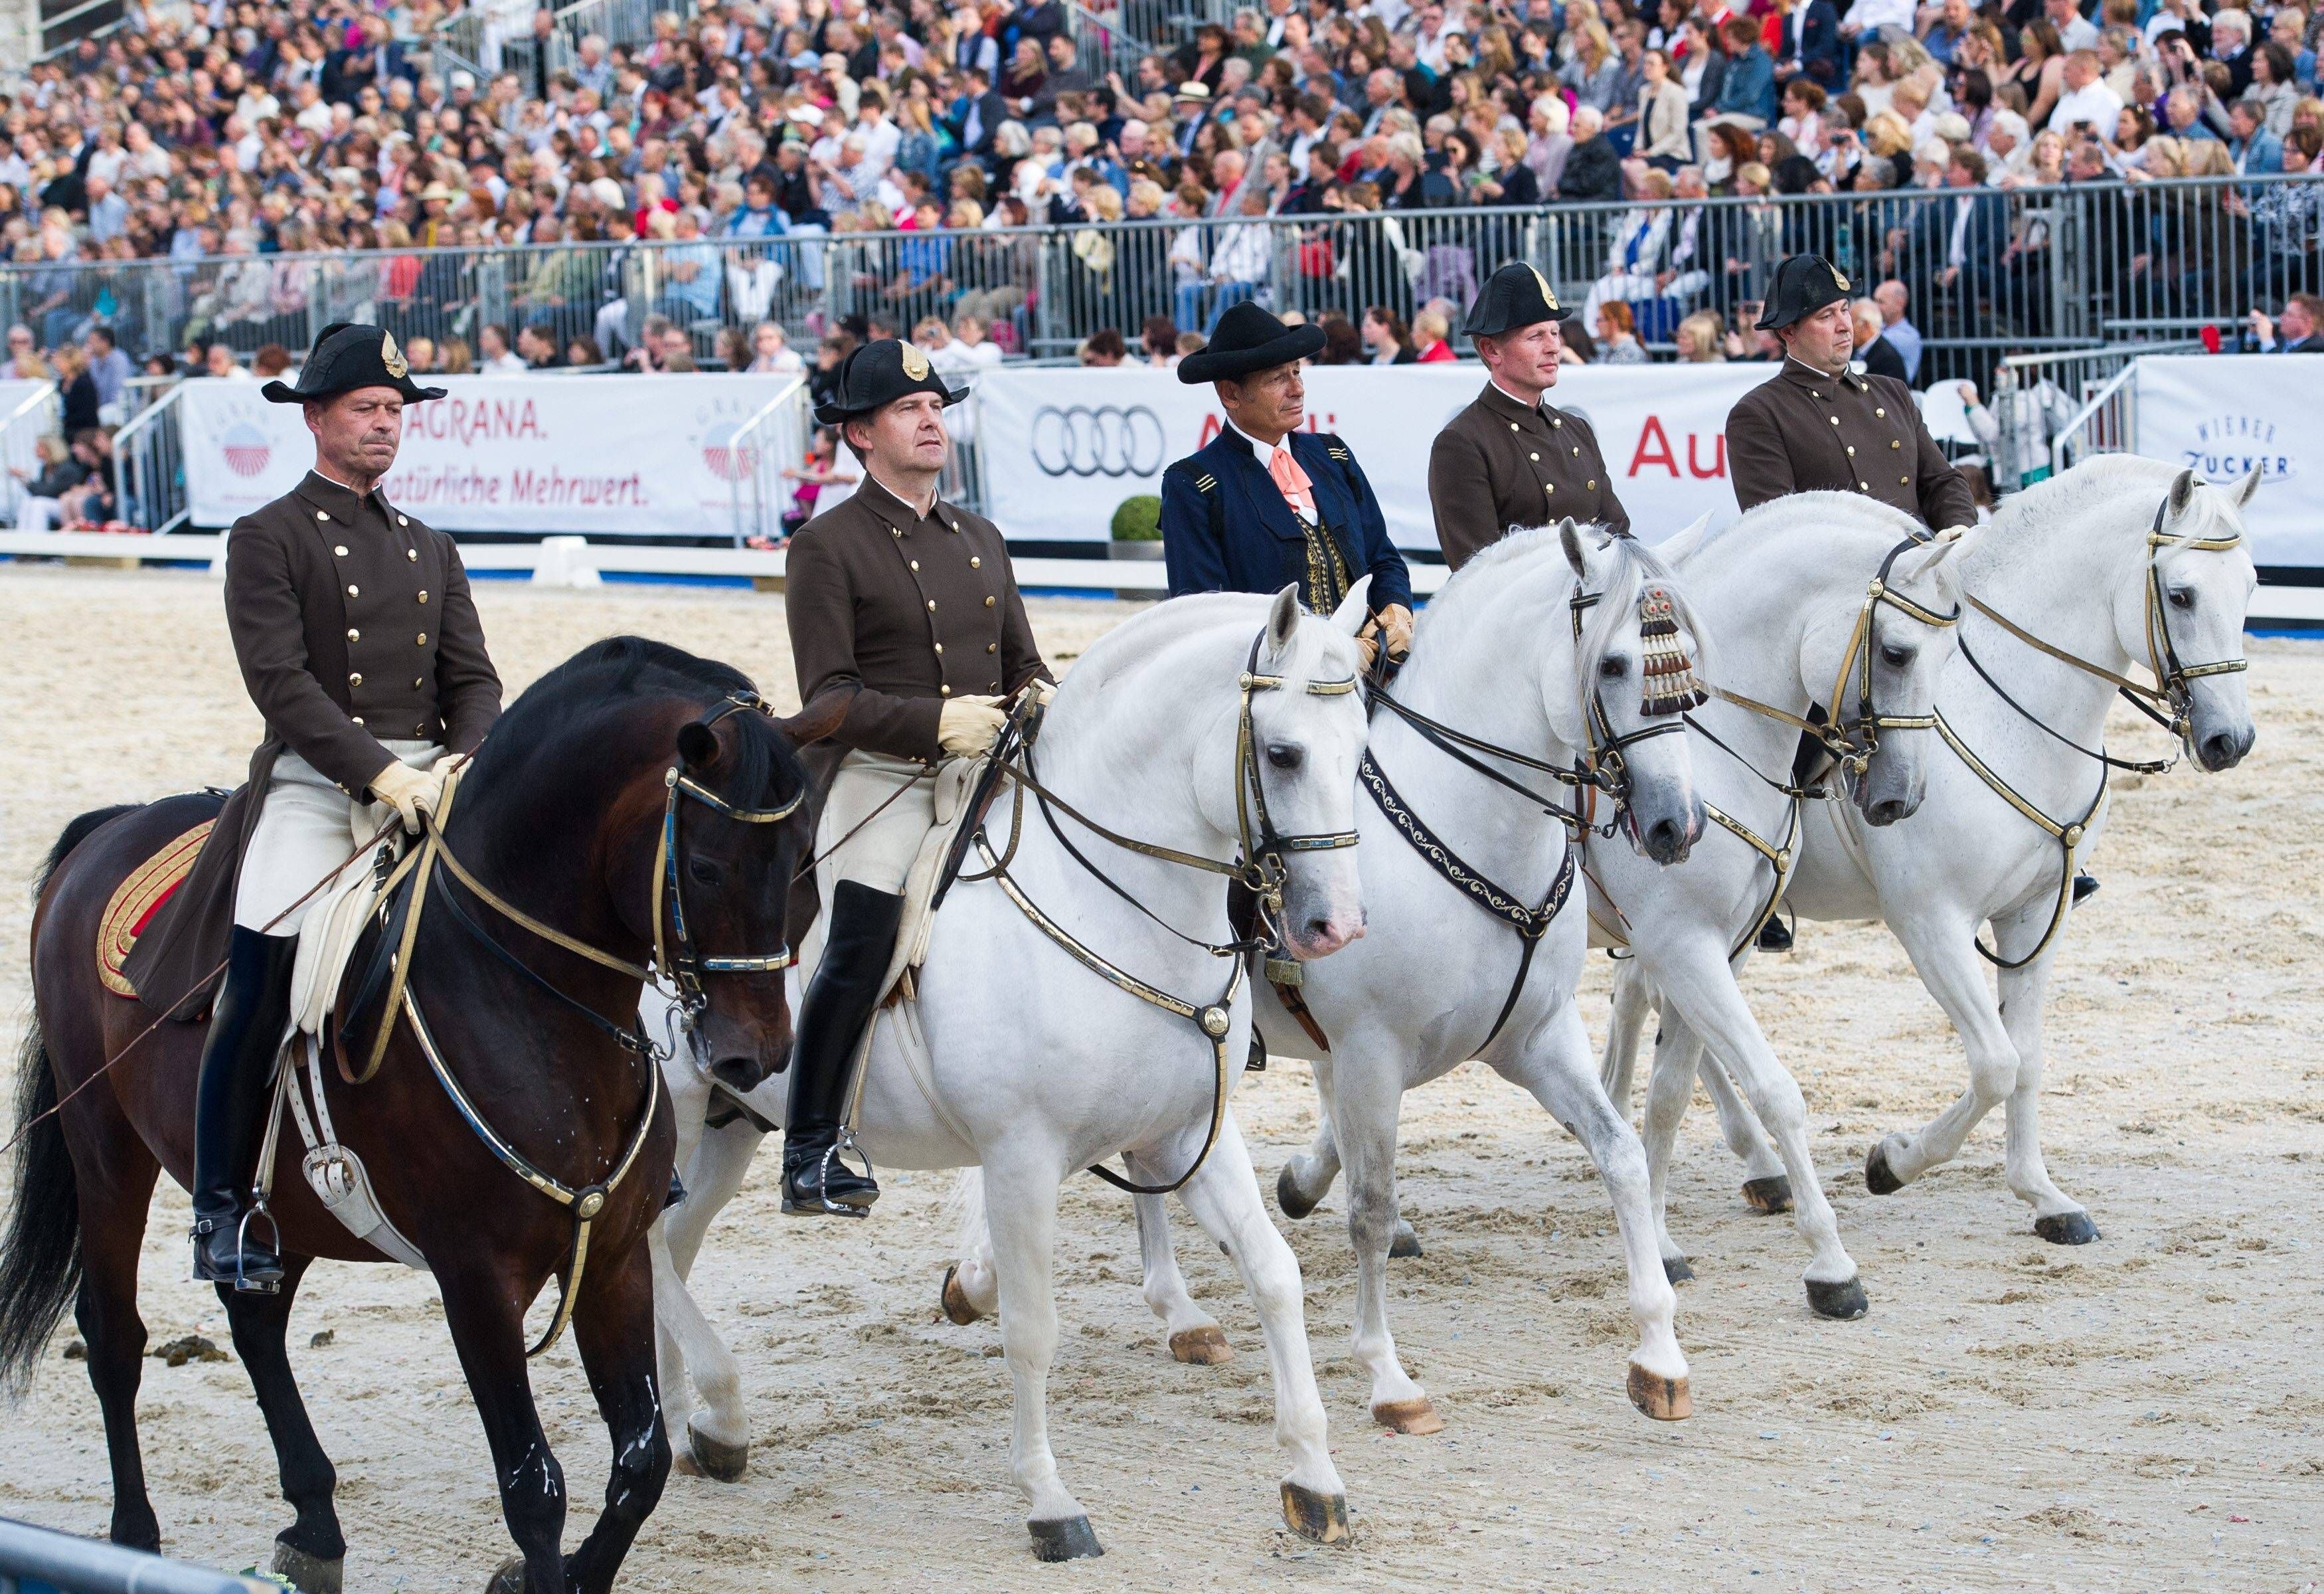 Vorführung&nbsp; der weltberühmten Lipizzaner Pferde der spanischen Hofreitschule.